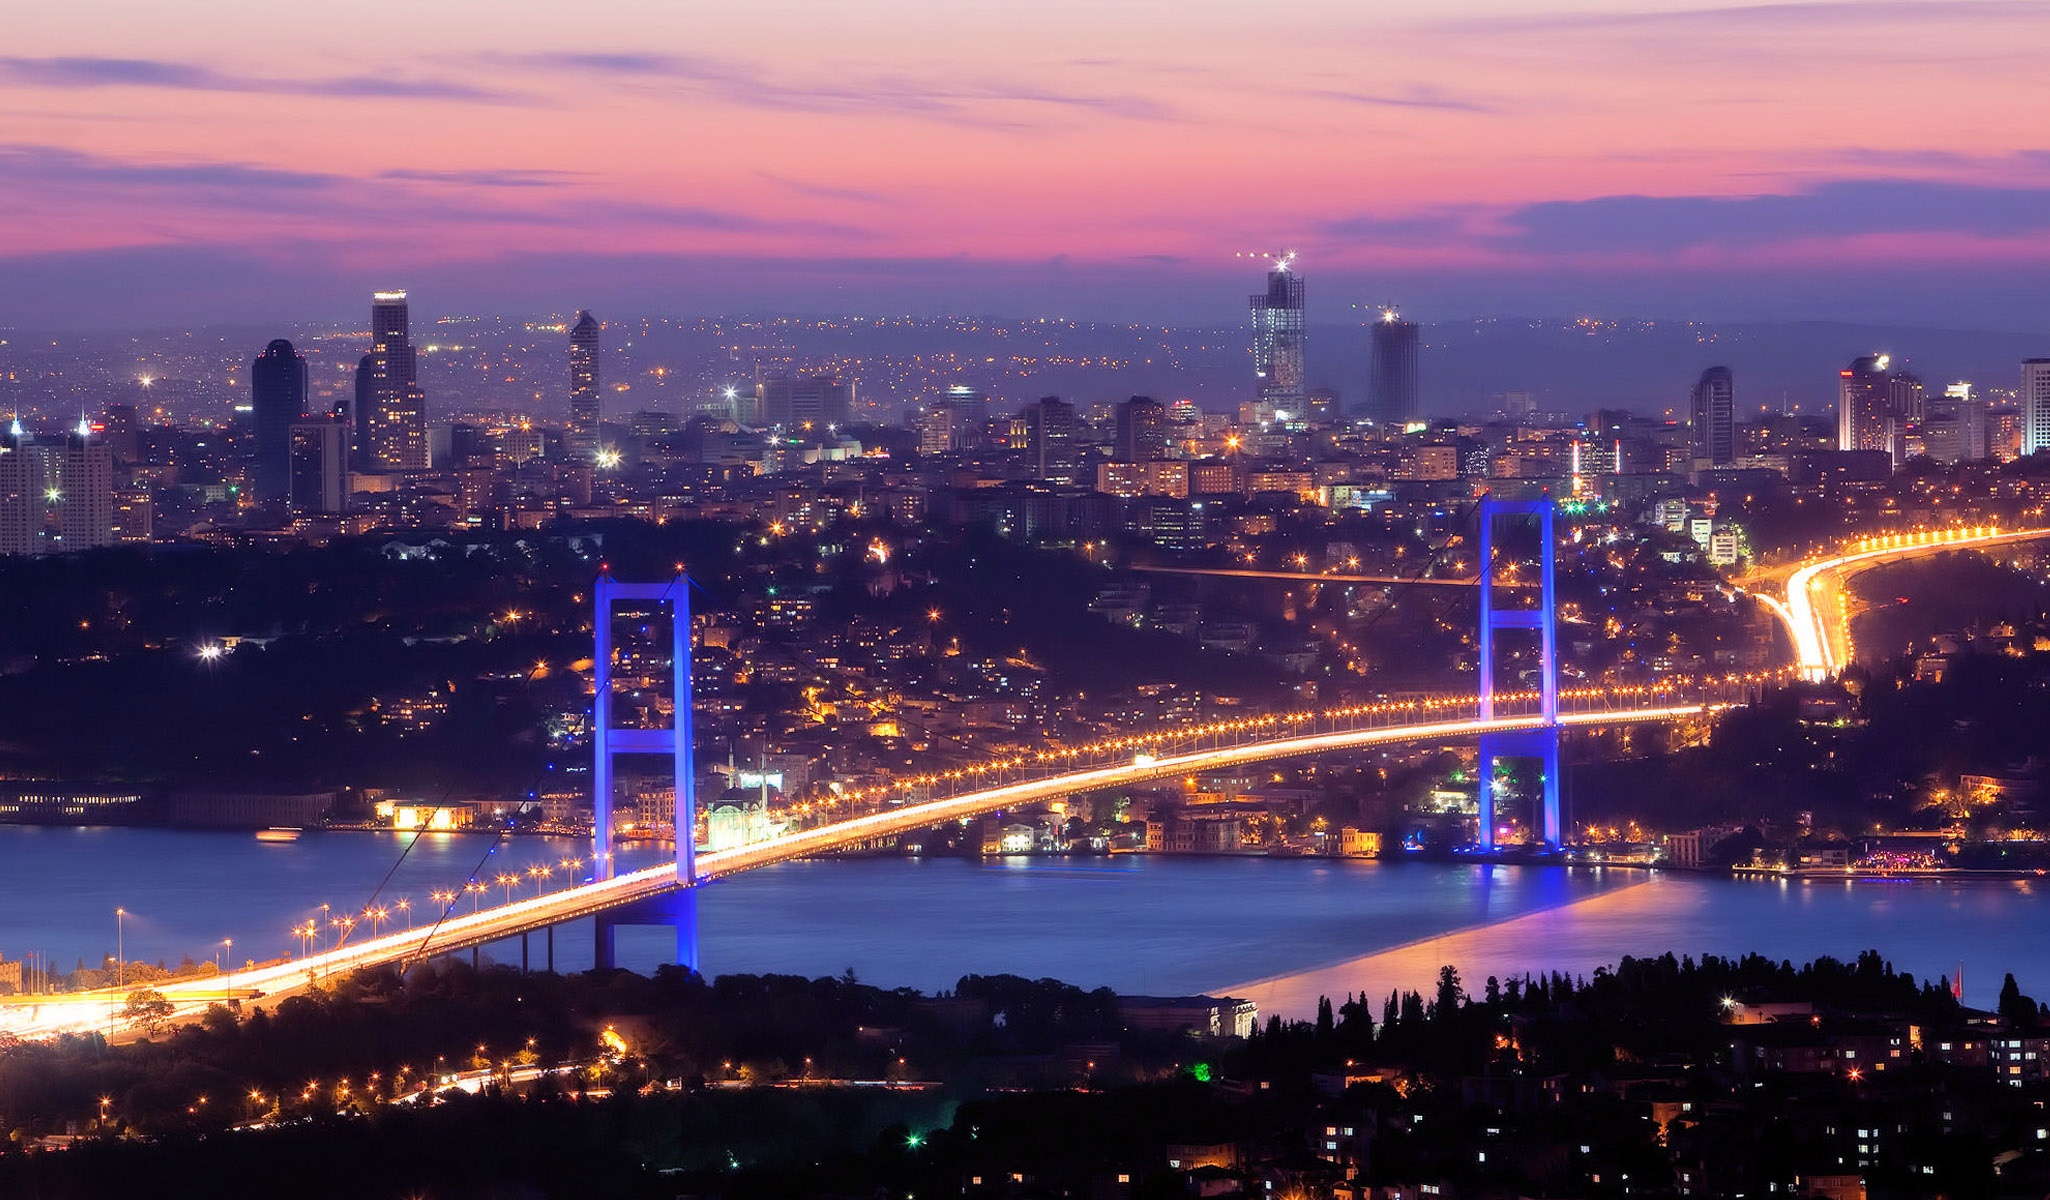 جسر البوسفور ويطلق عليه أيضا جسر البوسفور الأول (بالتركية: Boğaziçi Köprüsü or 1. Boğaziçi Köprüsü) هو أحد الجسرين في مدينة إسطنبول تركيا الذين يقطعان مضيق البوسفور، ويصل الجسر بين الجزء الأوروبي والآسيوي من إسطنبول